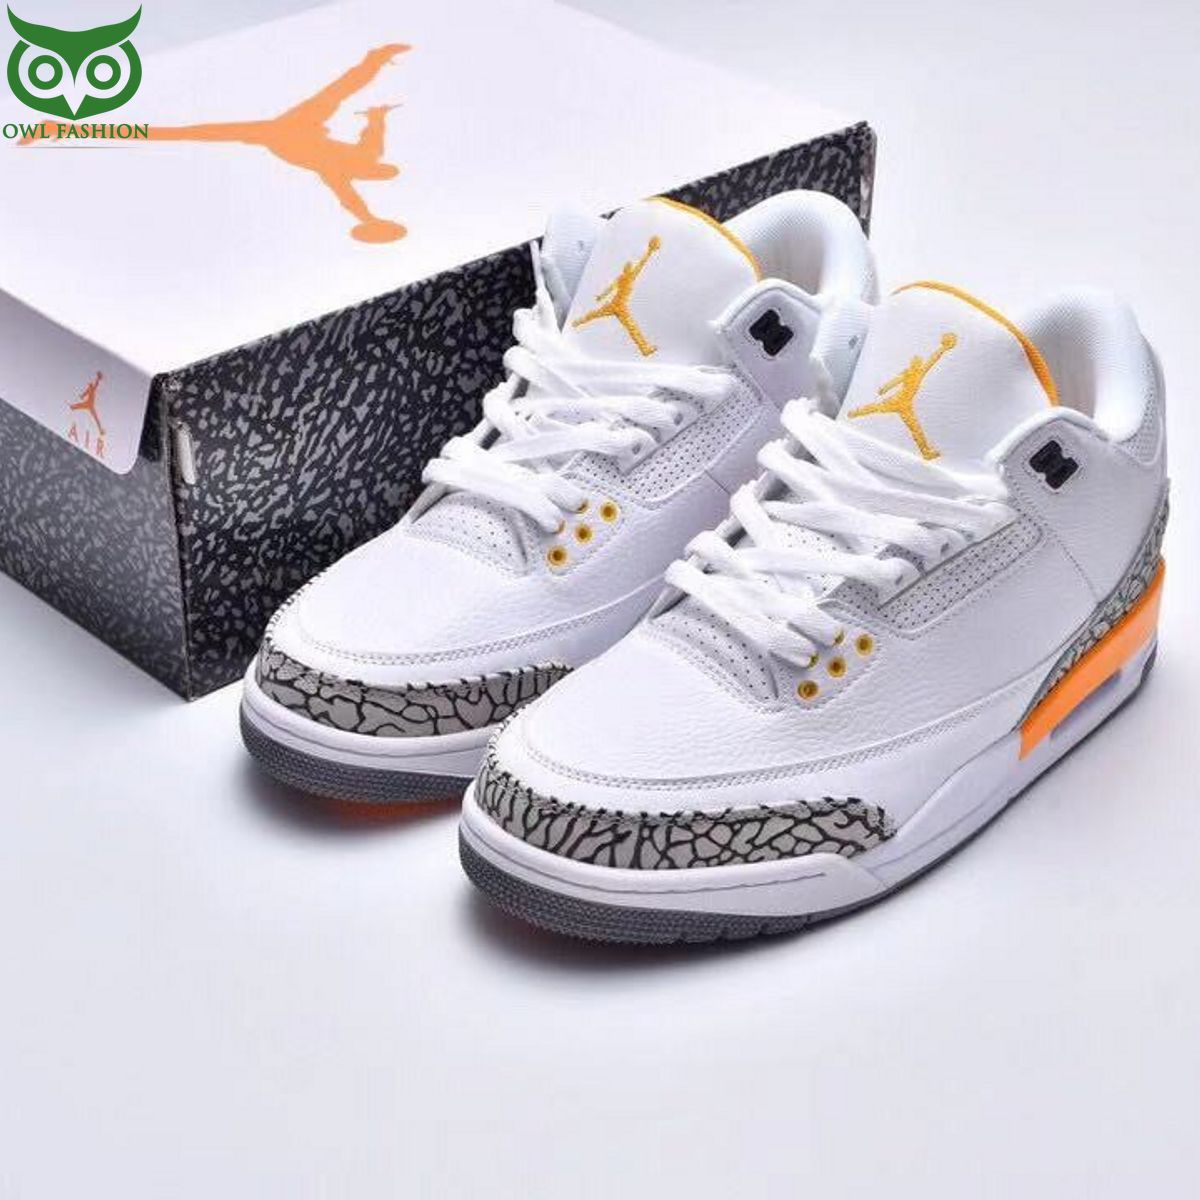 Nike Air Jordan 3 Laser Orange Lakers Shoes Sneakers